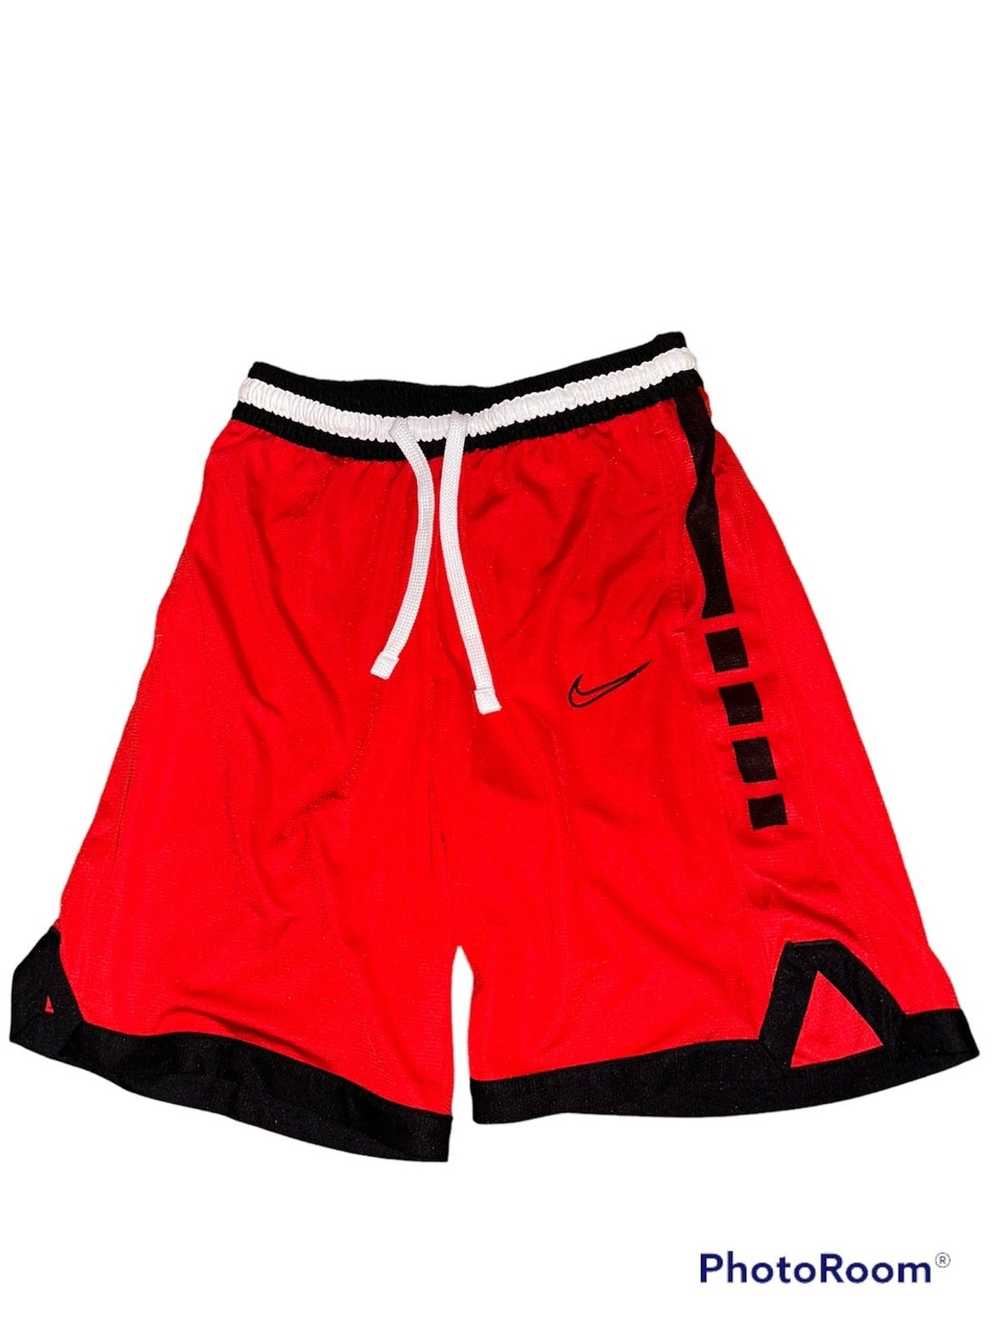 Nike Nike Elite Shorts Red - Men’s Medium - image 1